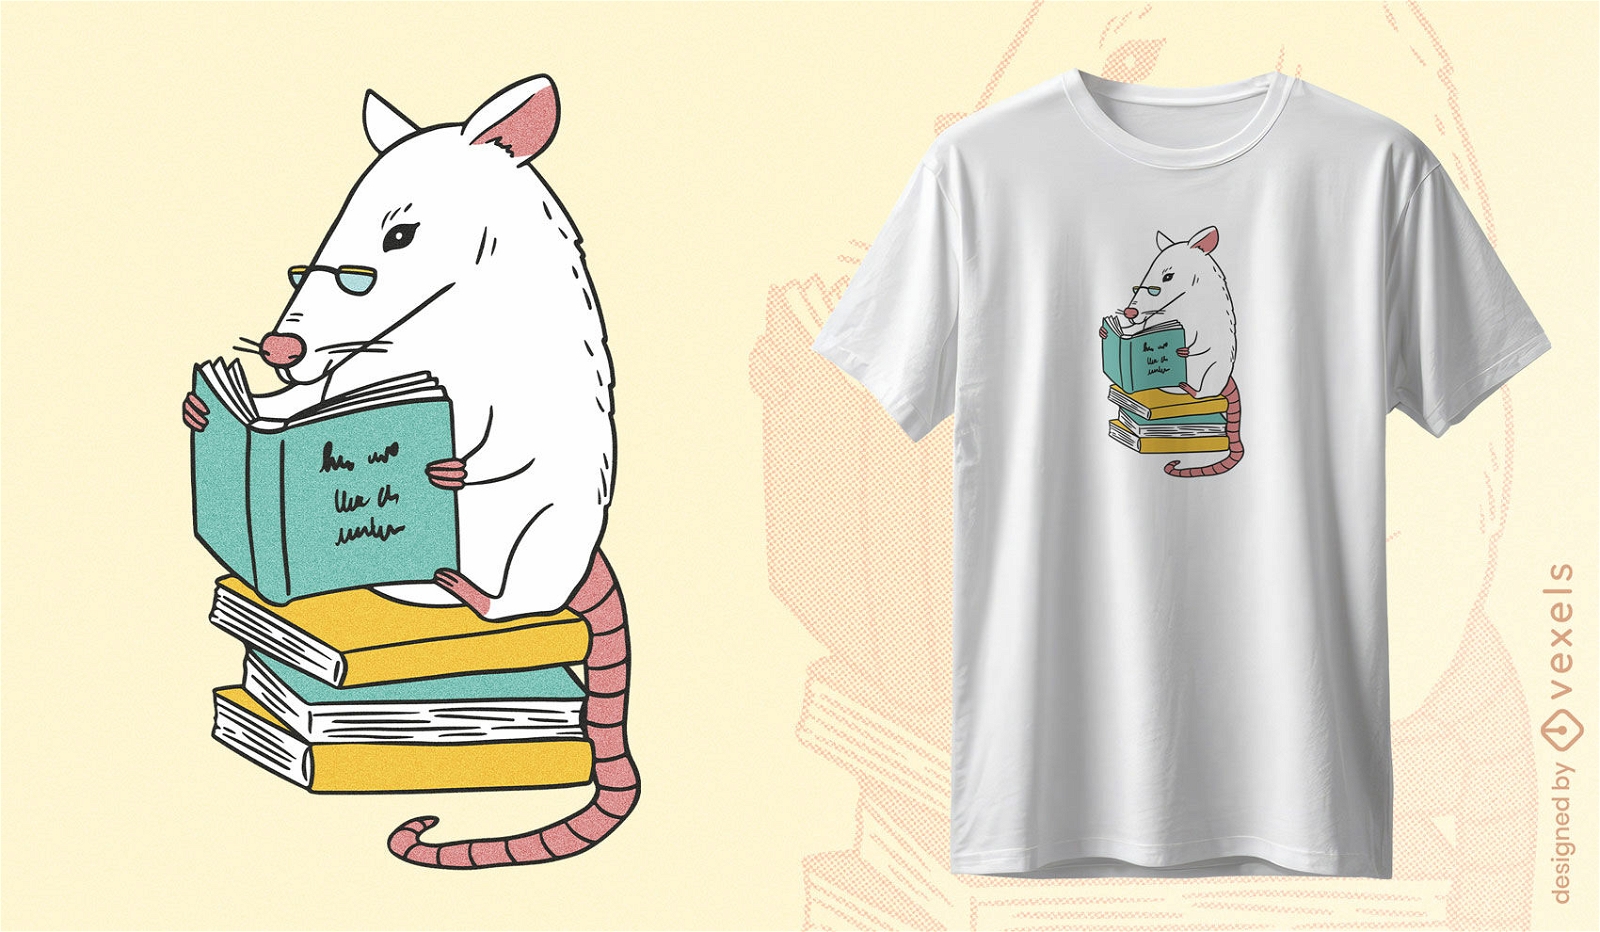 Buchliebendes Ratten-T-Shirt-Design